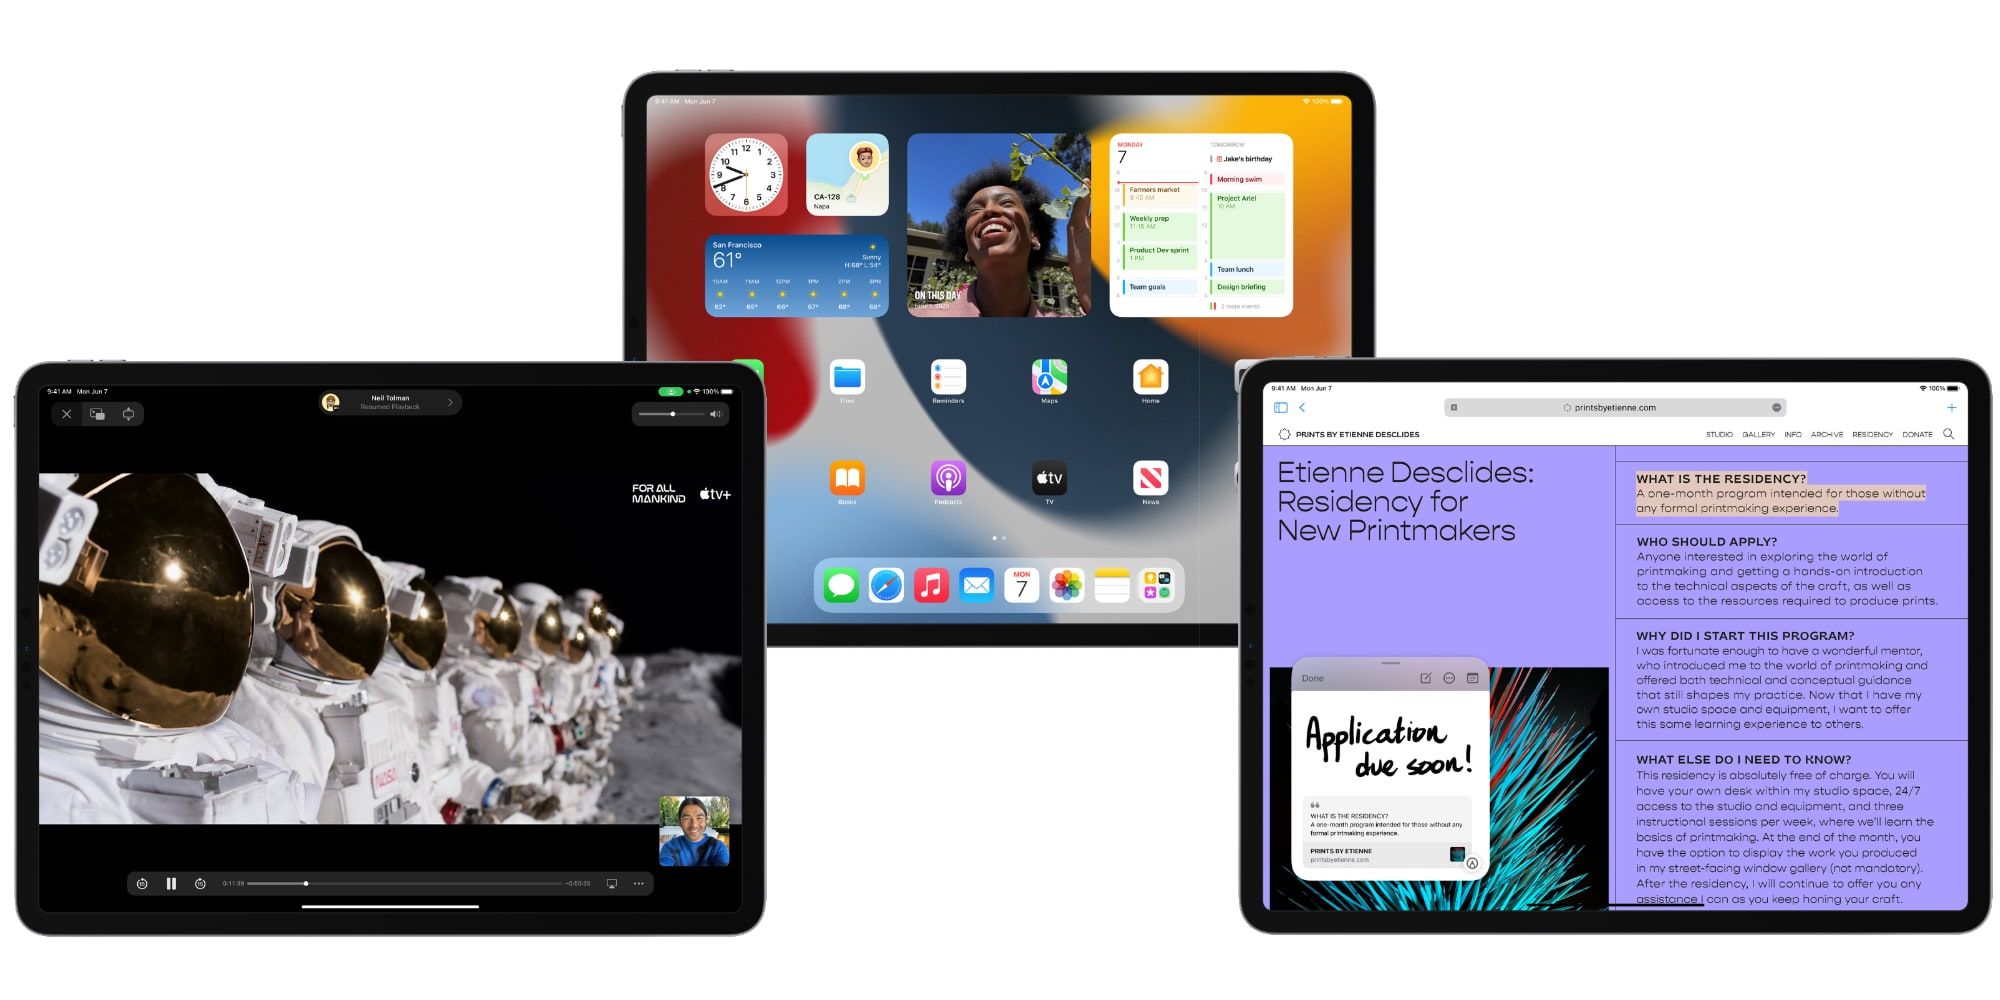 Apple iPadOS 15 Updates iPad